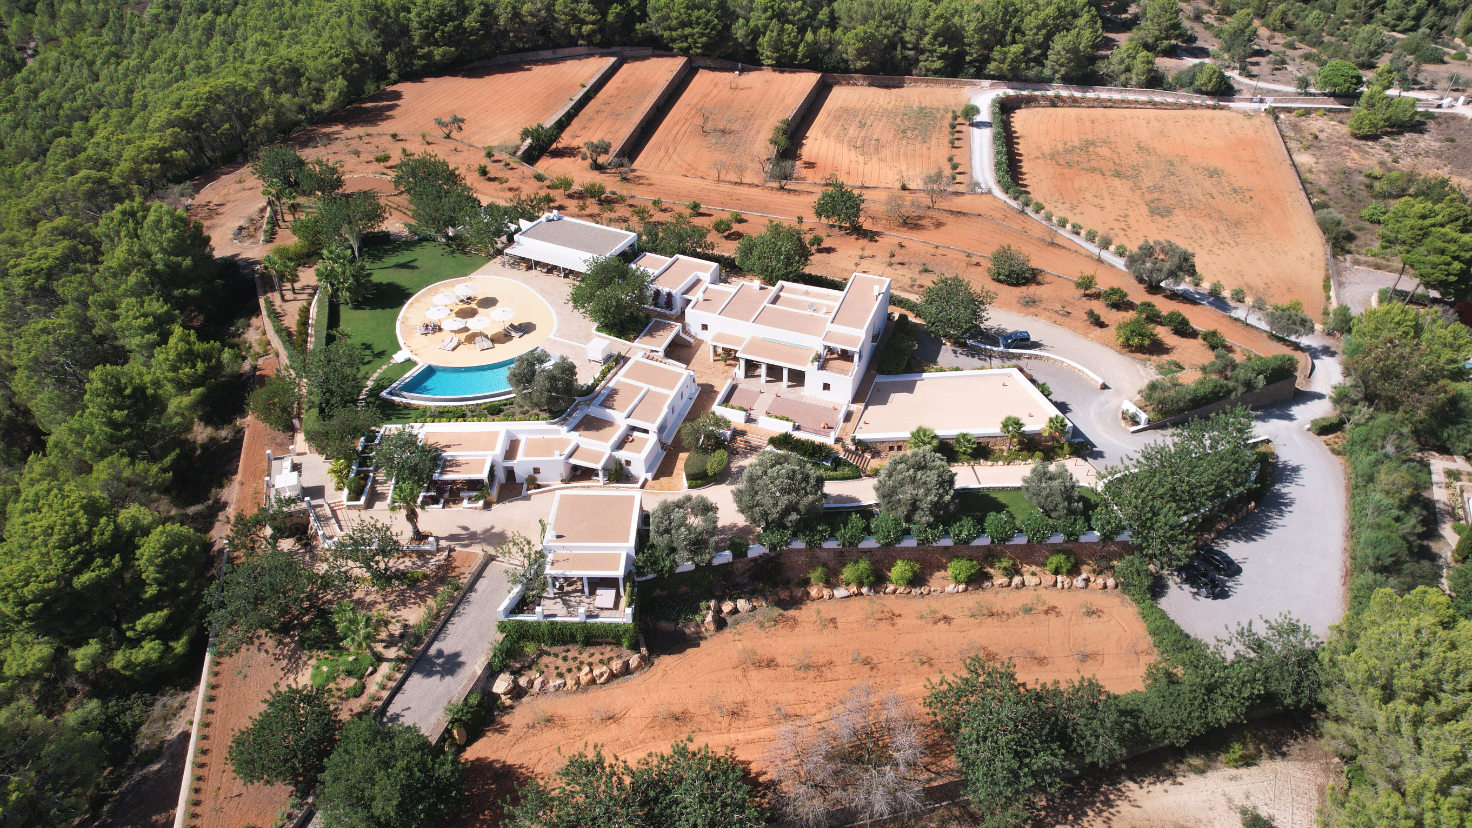 agroturismo ibiza can toni xumeu dron 016 - LeibTour: TOP aparthotels in Ibiza